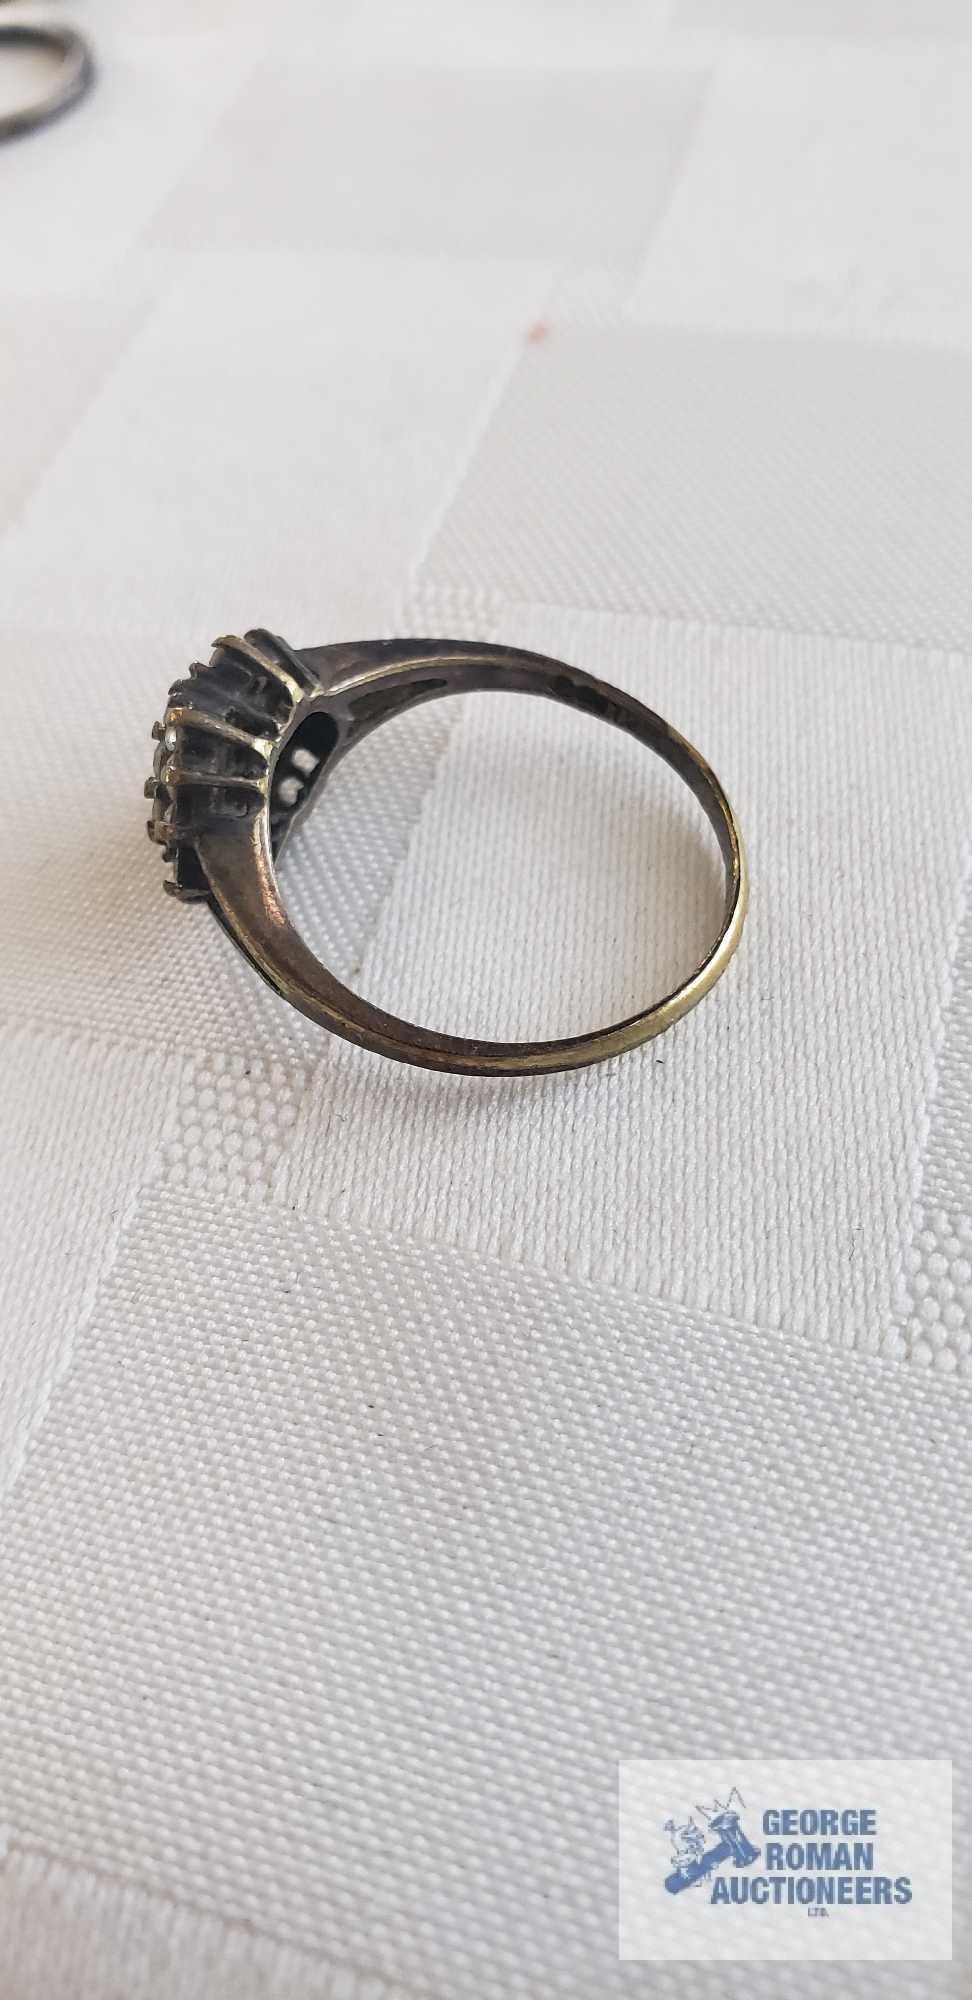 Three gemstone rings, have markings and hoop earrings